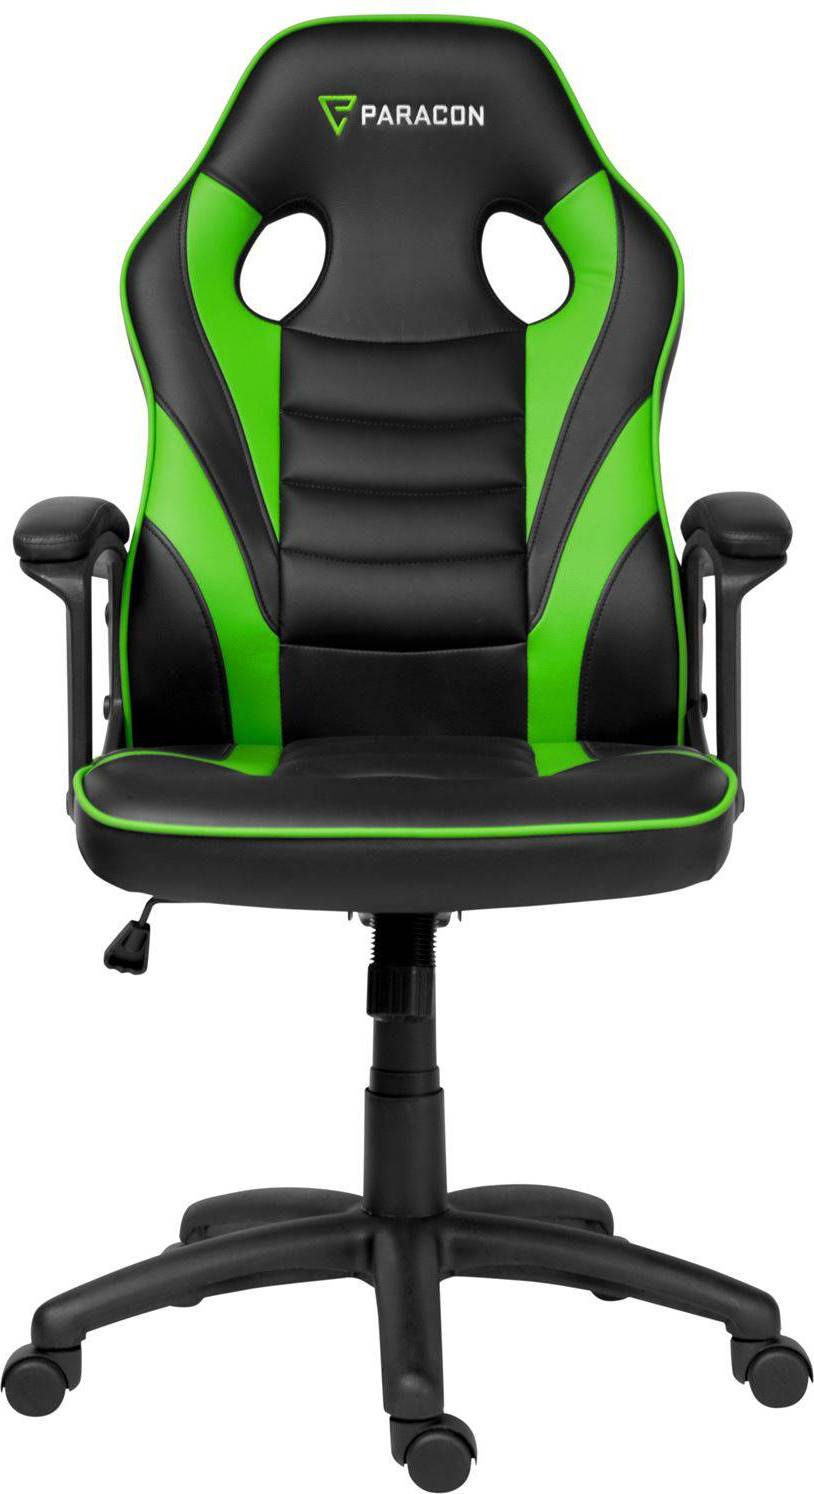  Bild på Paracon Squire Gaming Chair - Black/Green gamingstol